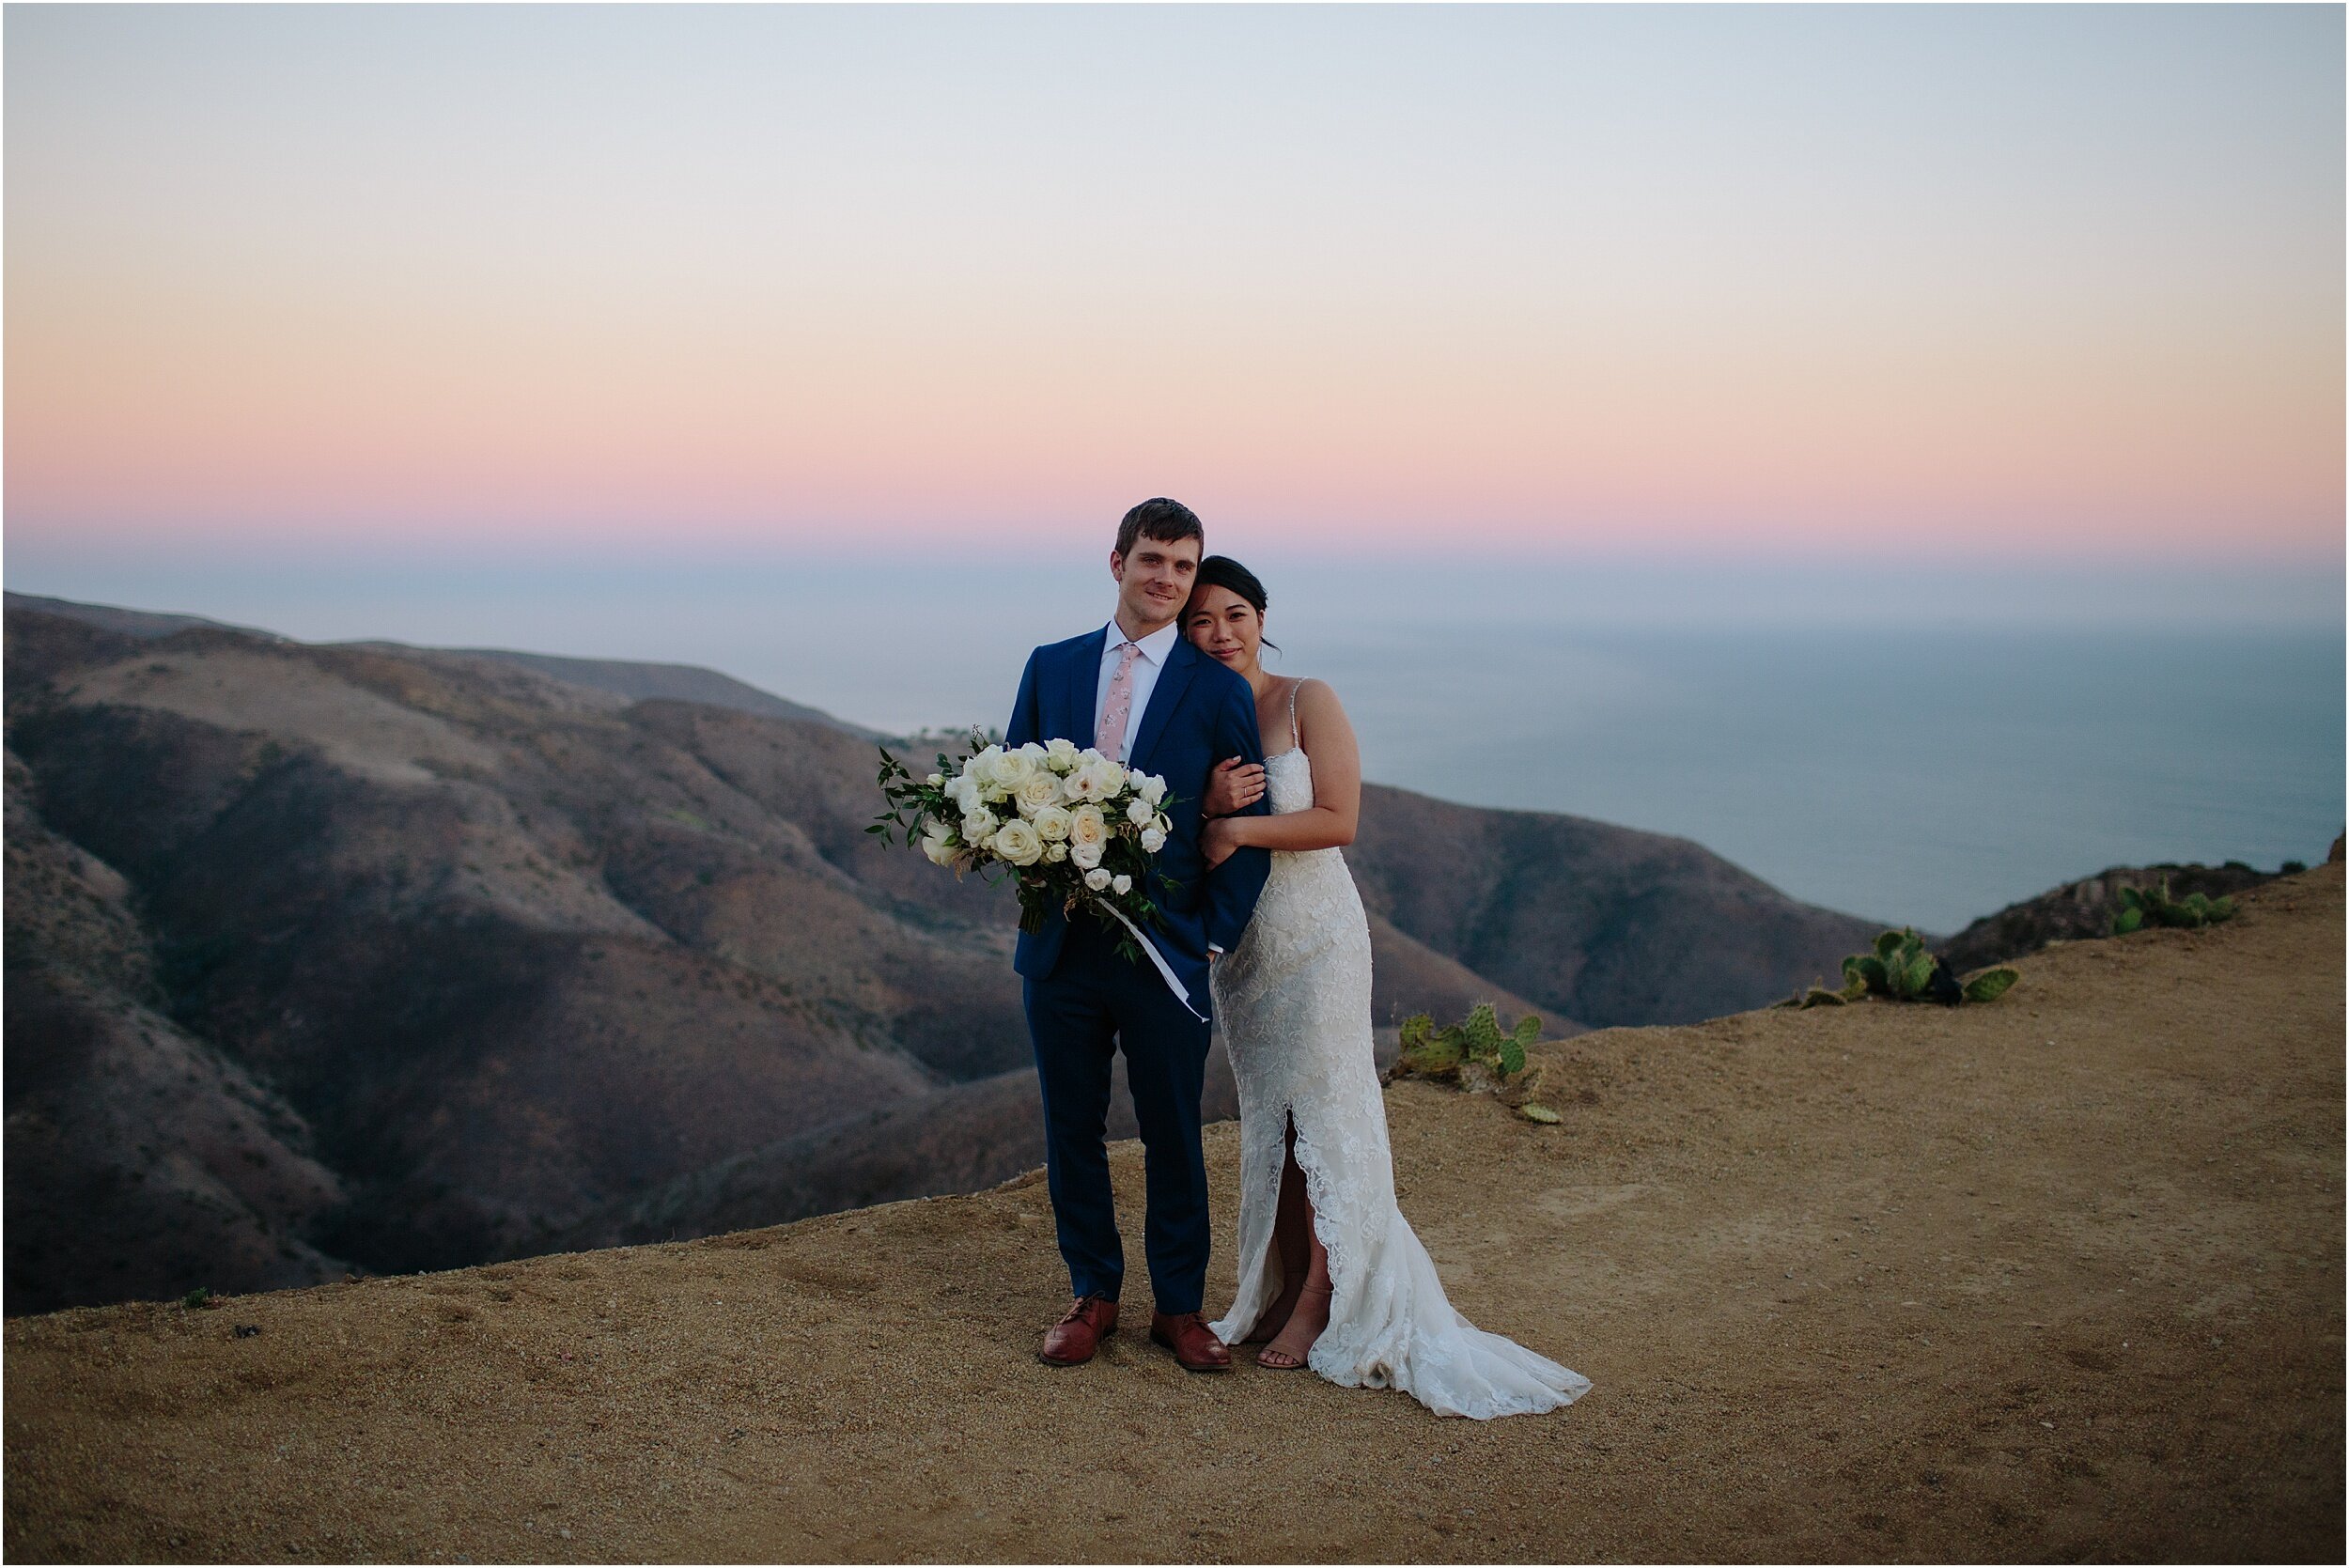 Amy and Jeff | Small Malibu Wedding | Malibu Elopement Photographer_0053.jpg